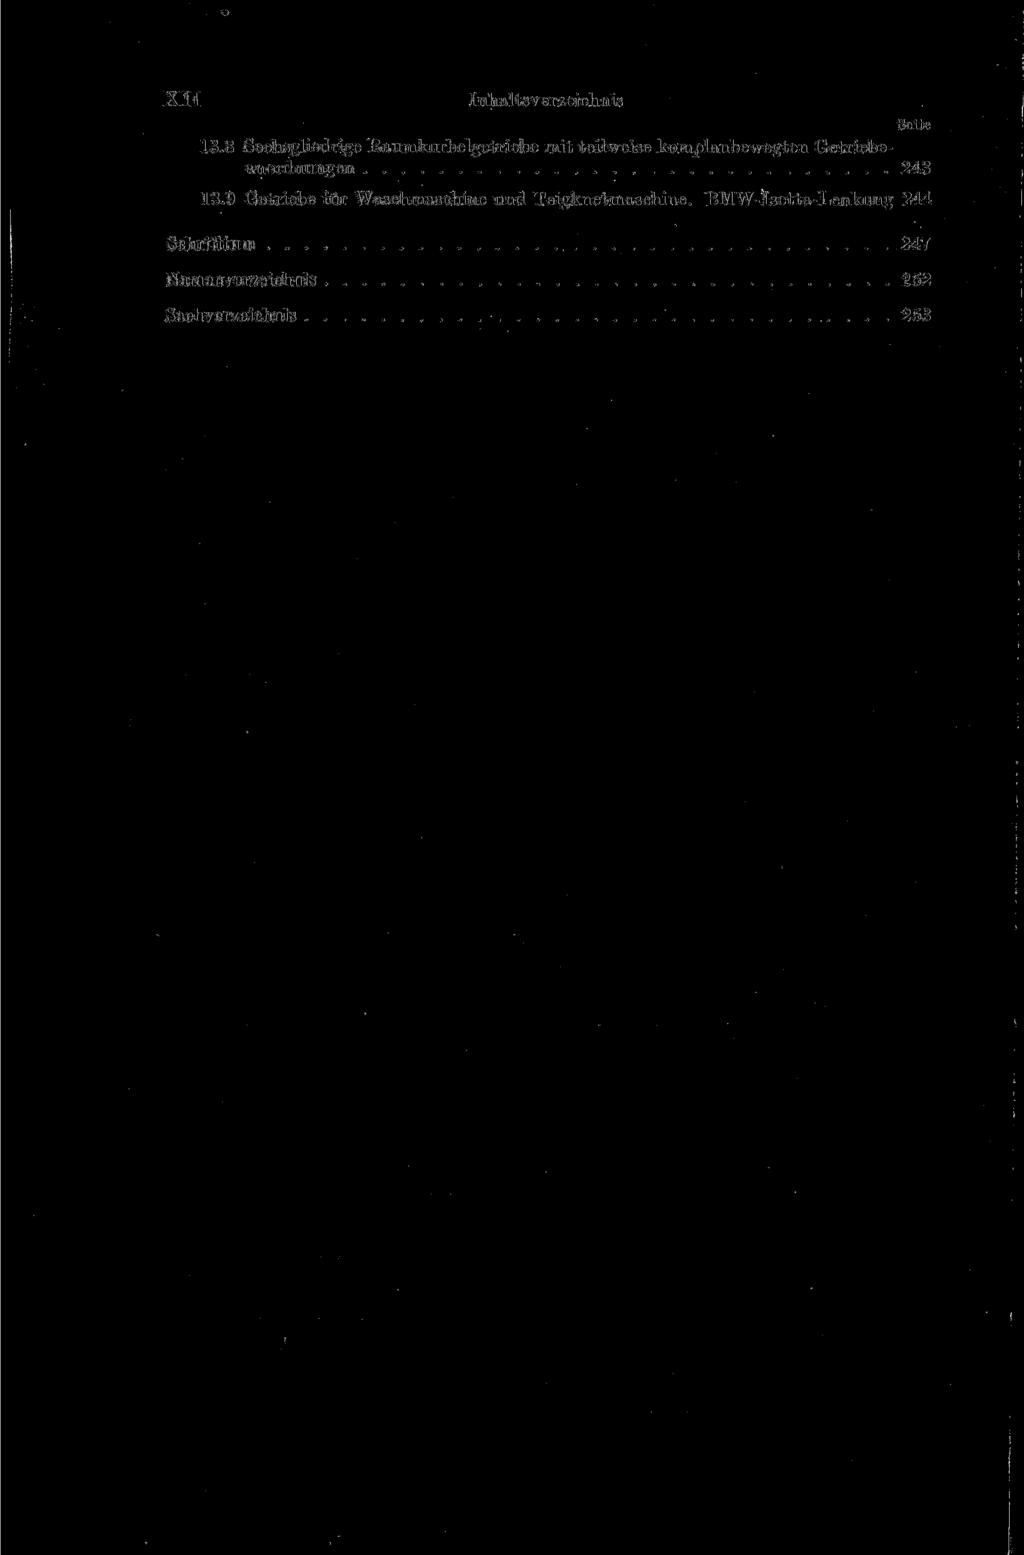 XII Inhaltsverzeichnis 13.8 Sechsgliedrige Raumkurbelgetriebe mit teilweise komplanbewegten Getriebeanordnungen 243 13.